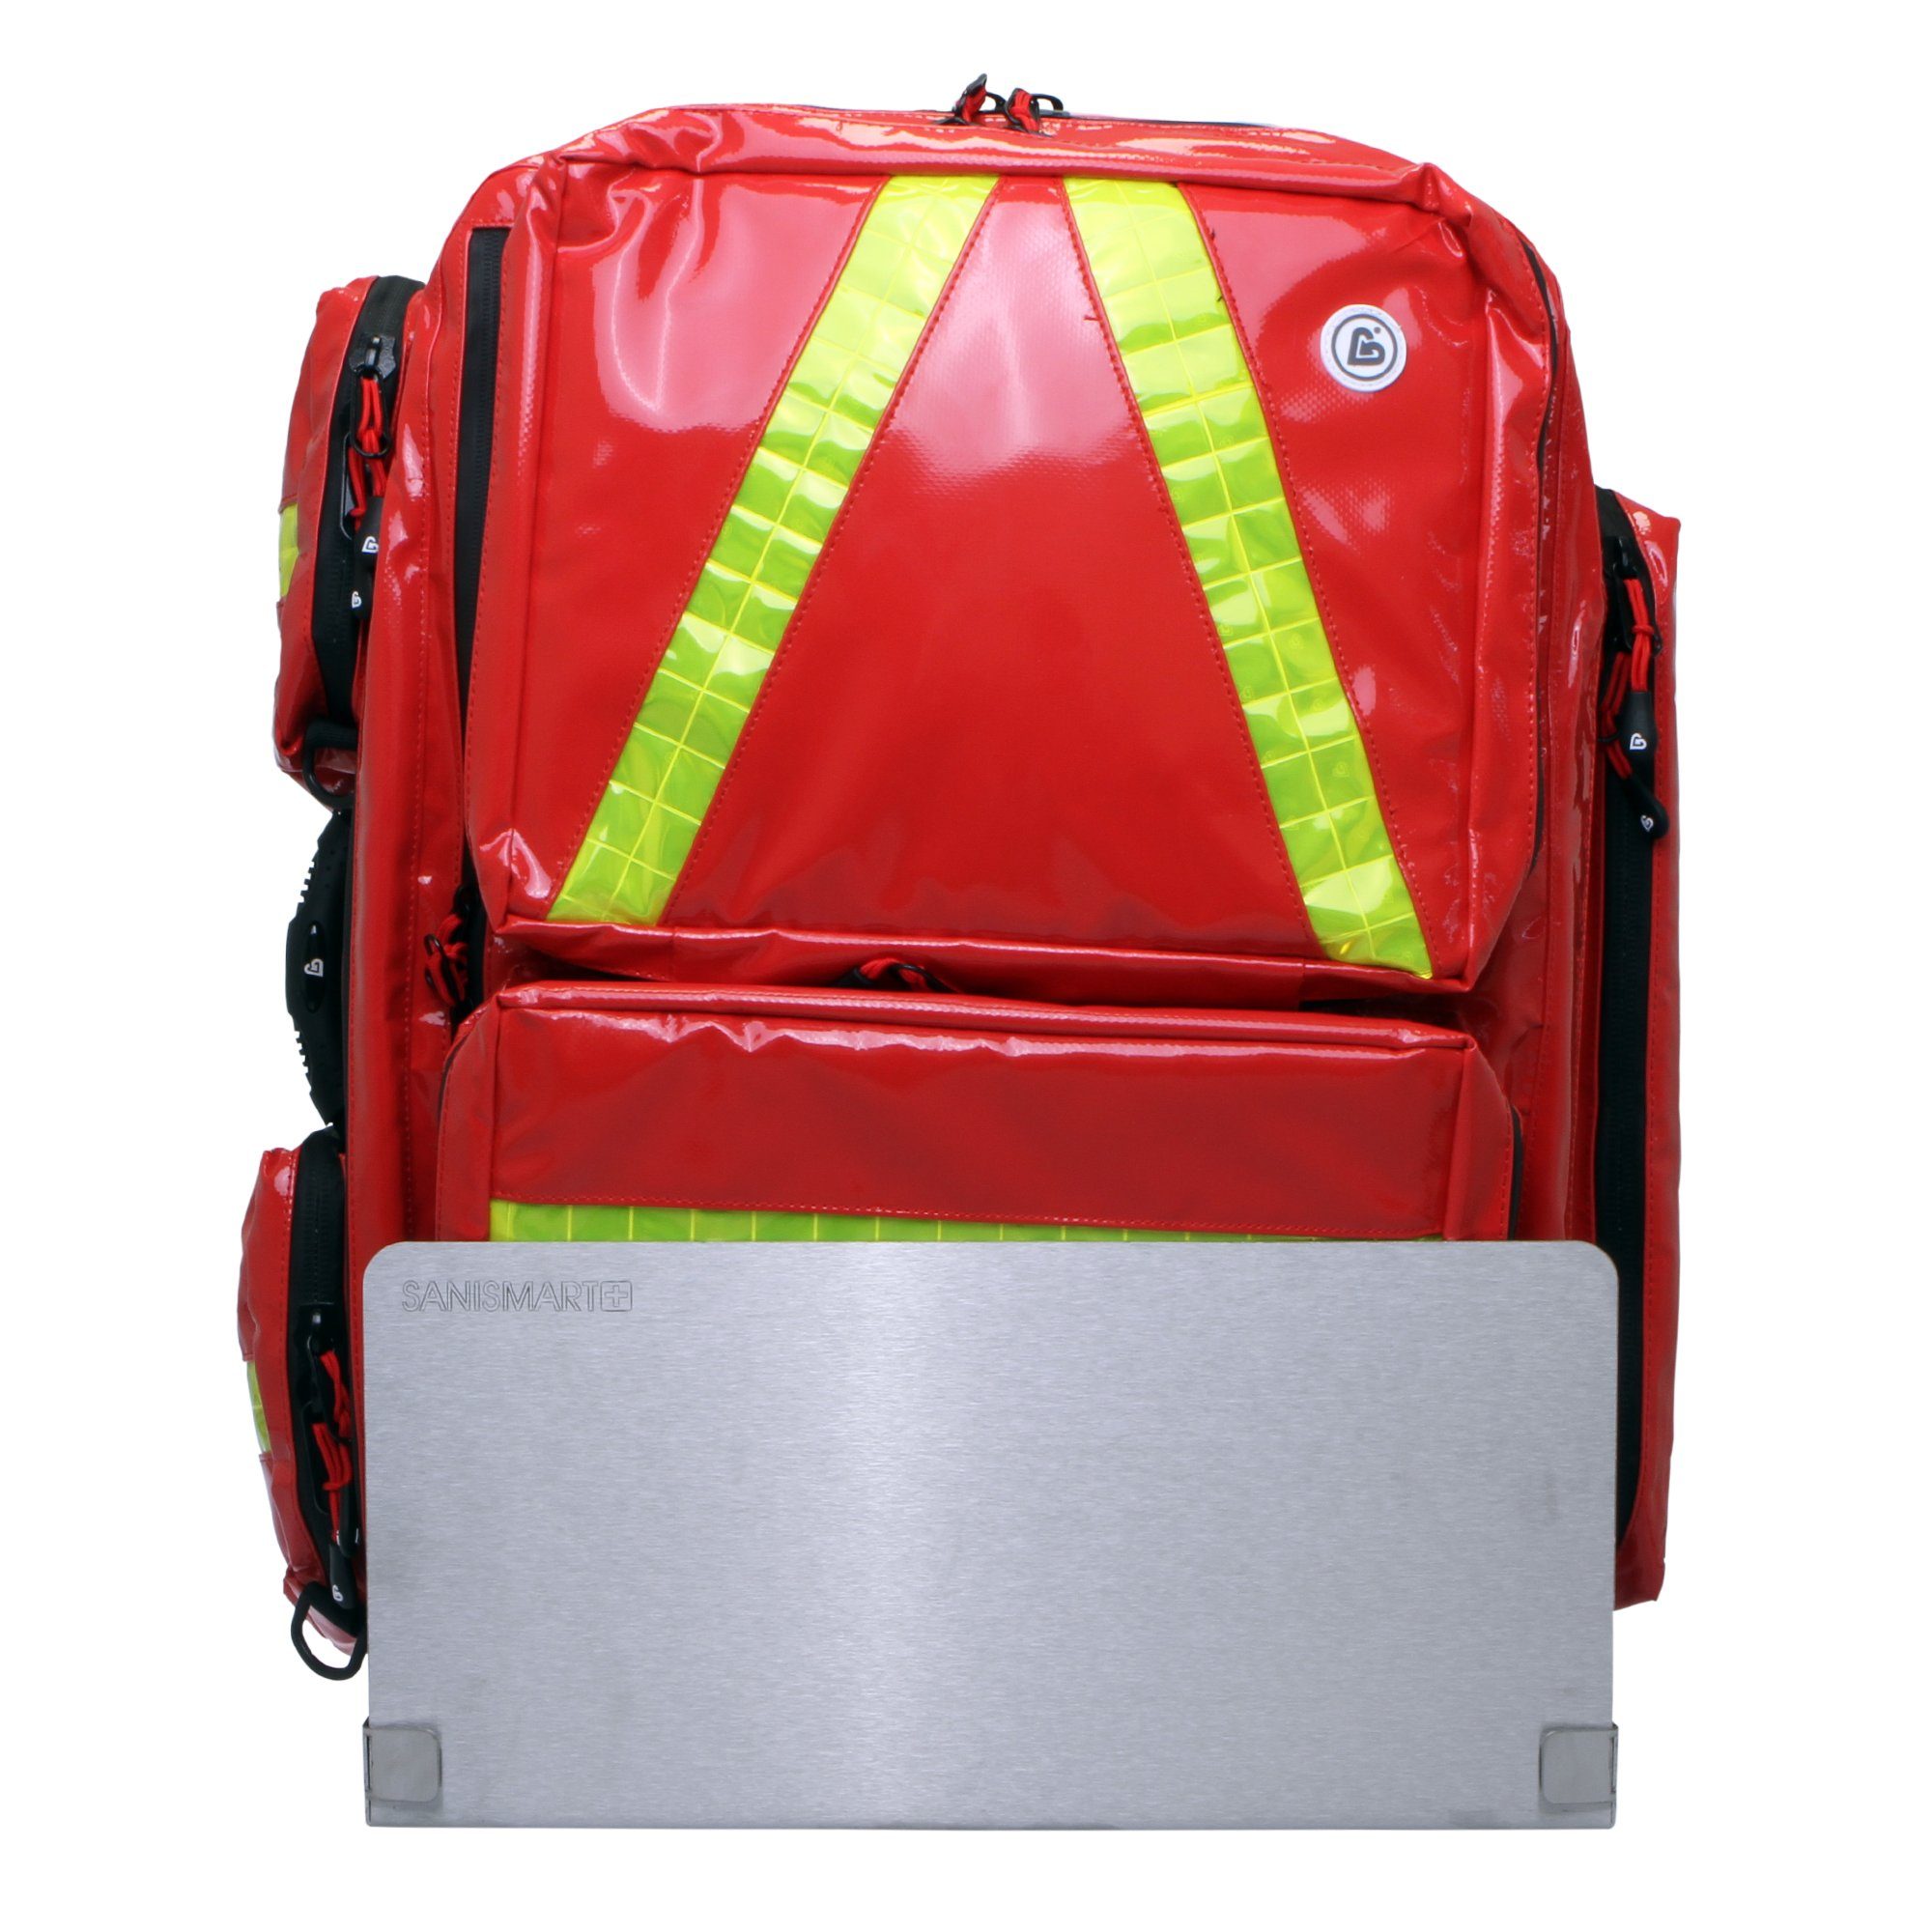 SANISMART Arzttasche Wandhalterung für Notfallrucksäcke mit Notfallrucksack Medicus XL Rot Plane